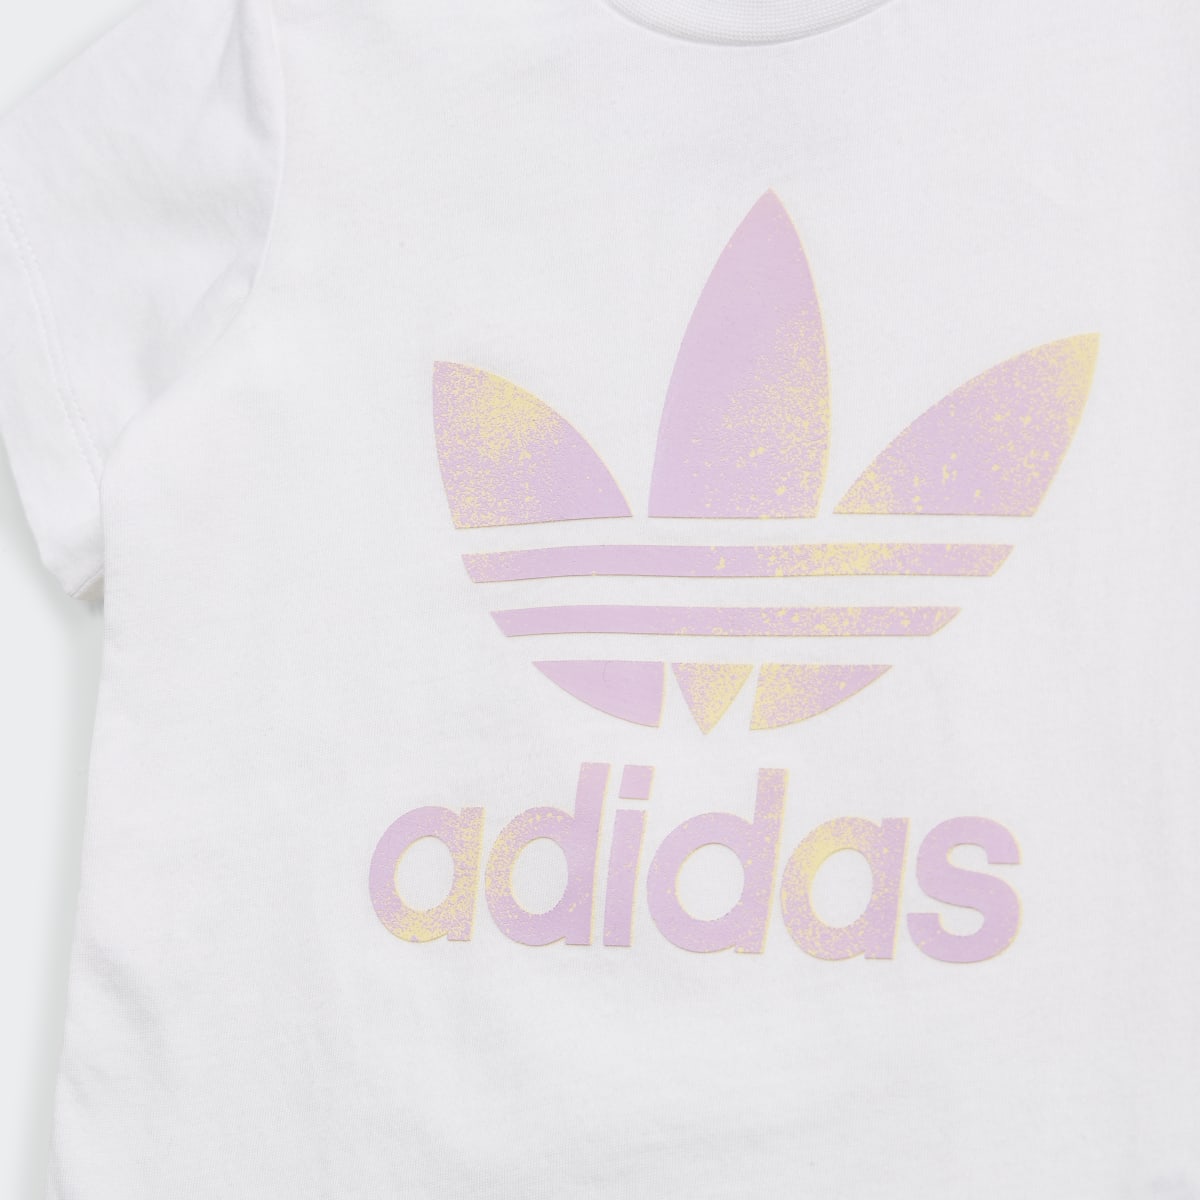 Adidas Graphic Logo Shorts and Tee Set. 9